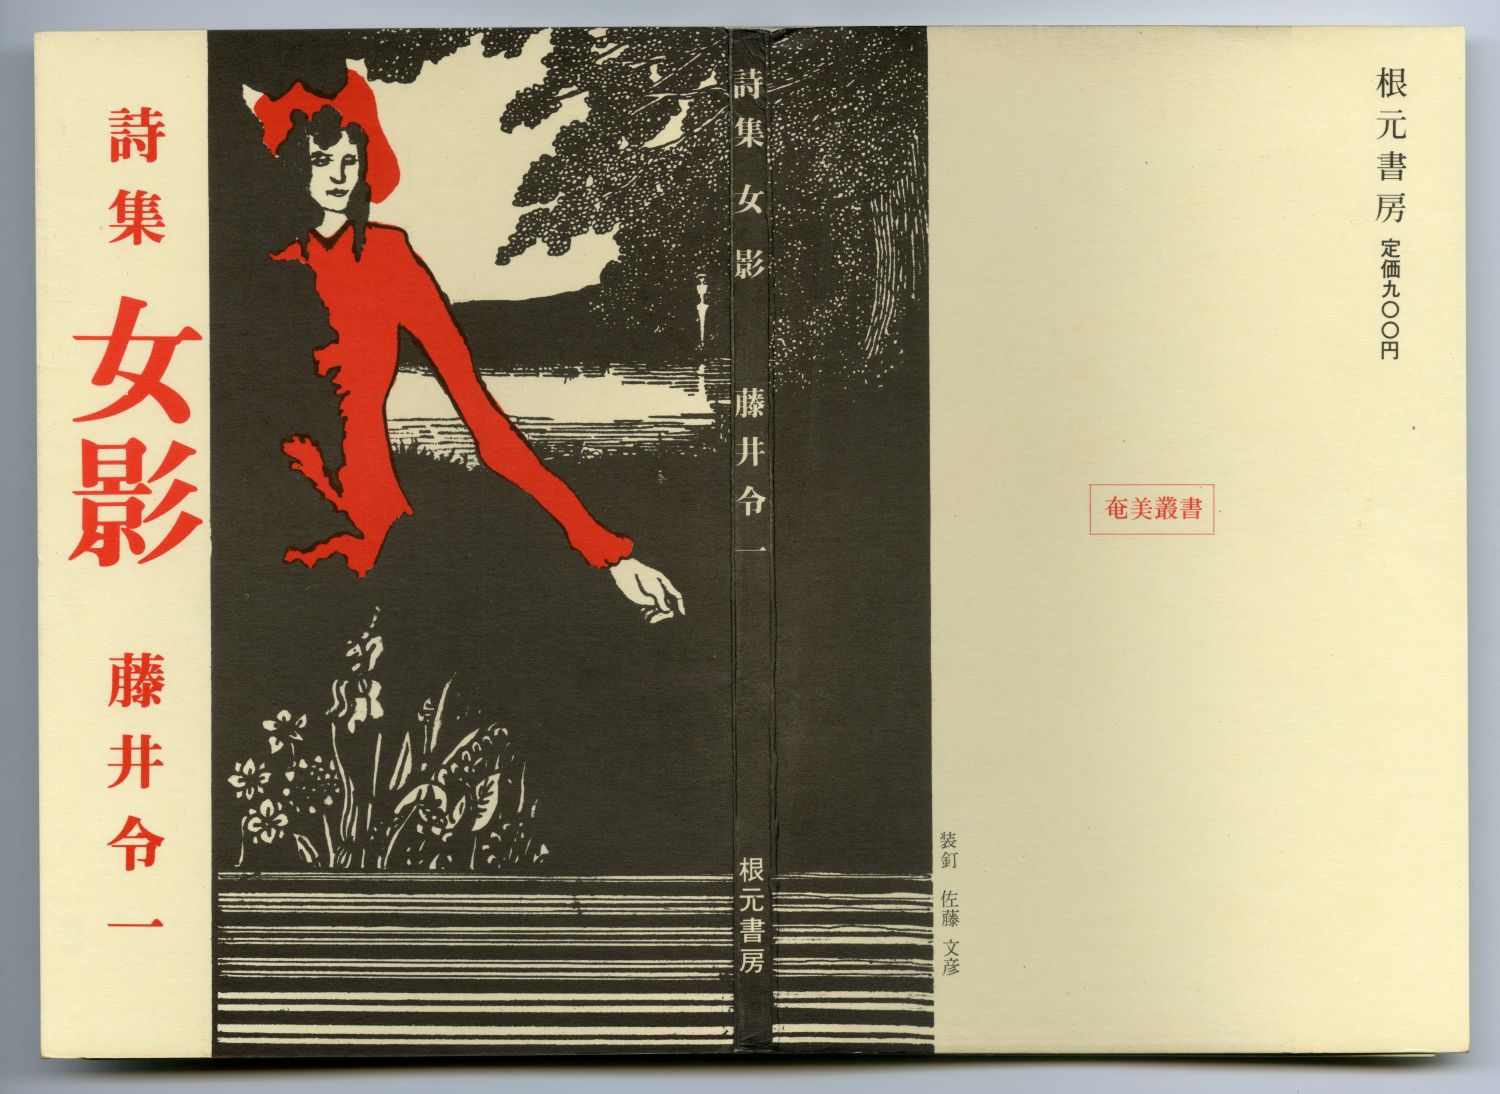 藤井令一『女影』（1982年、根元書房）表紙